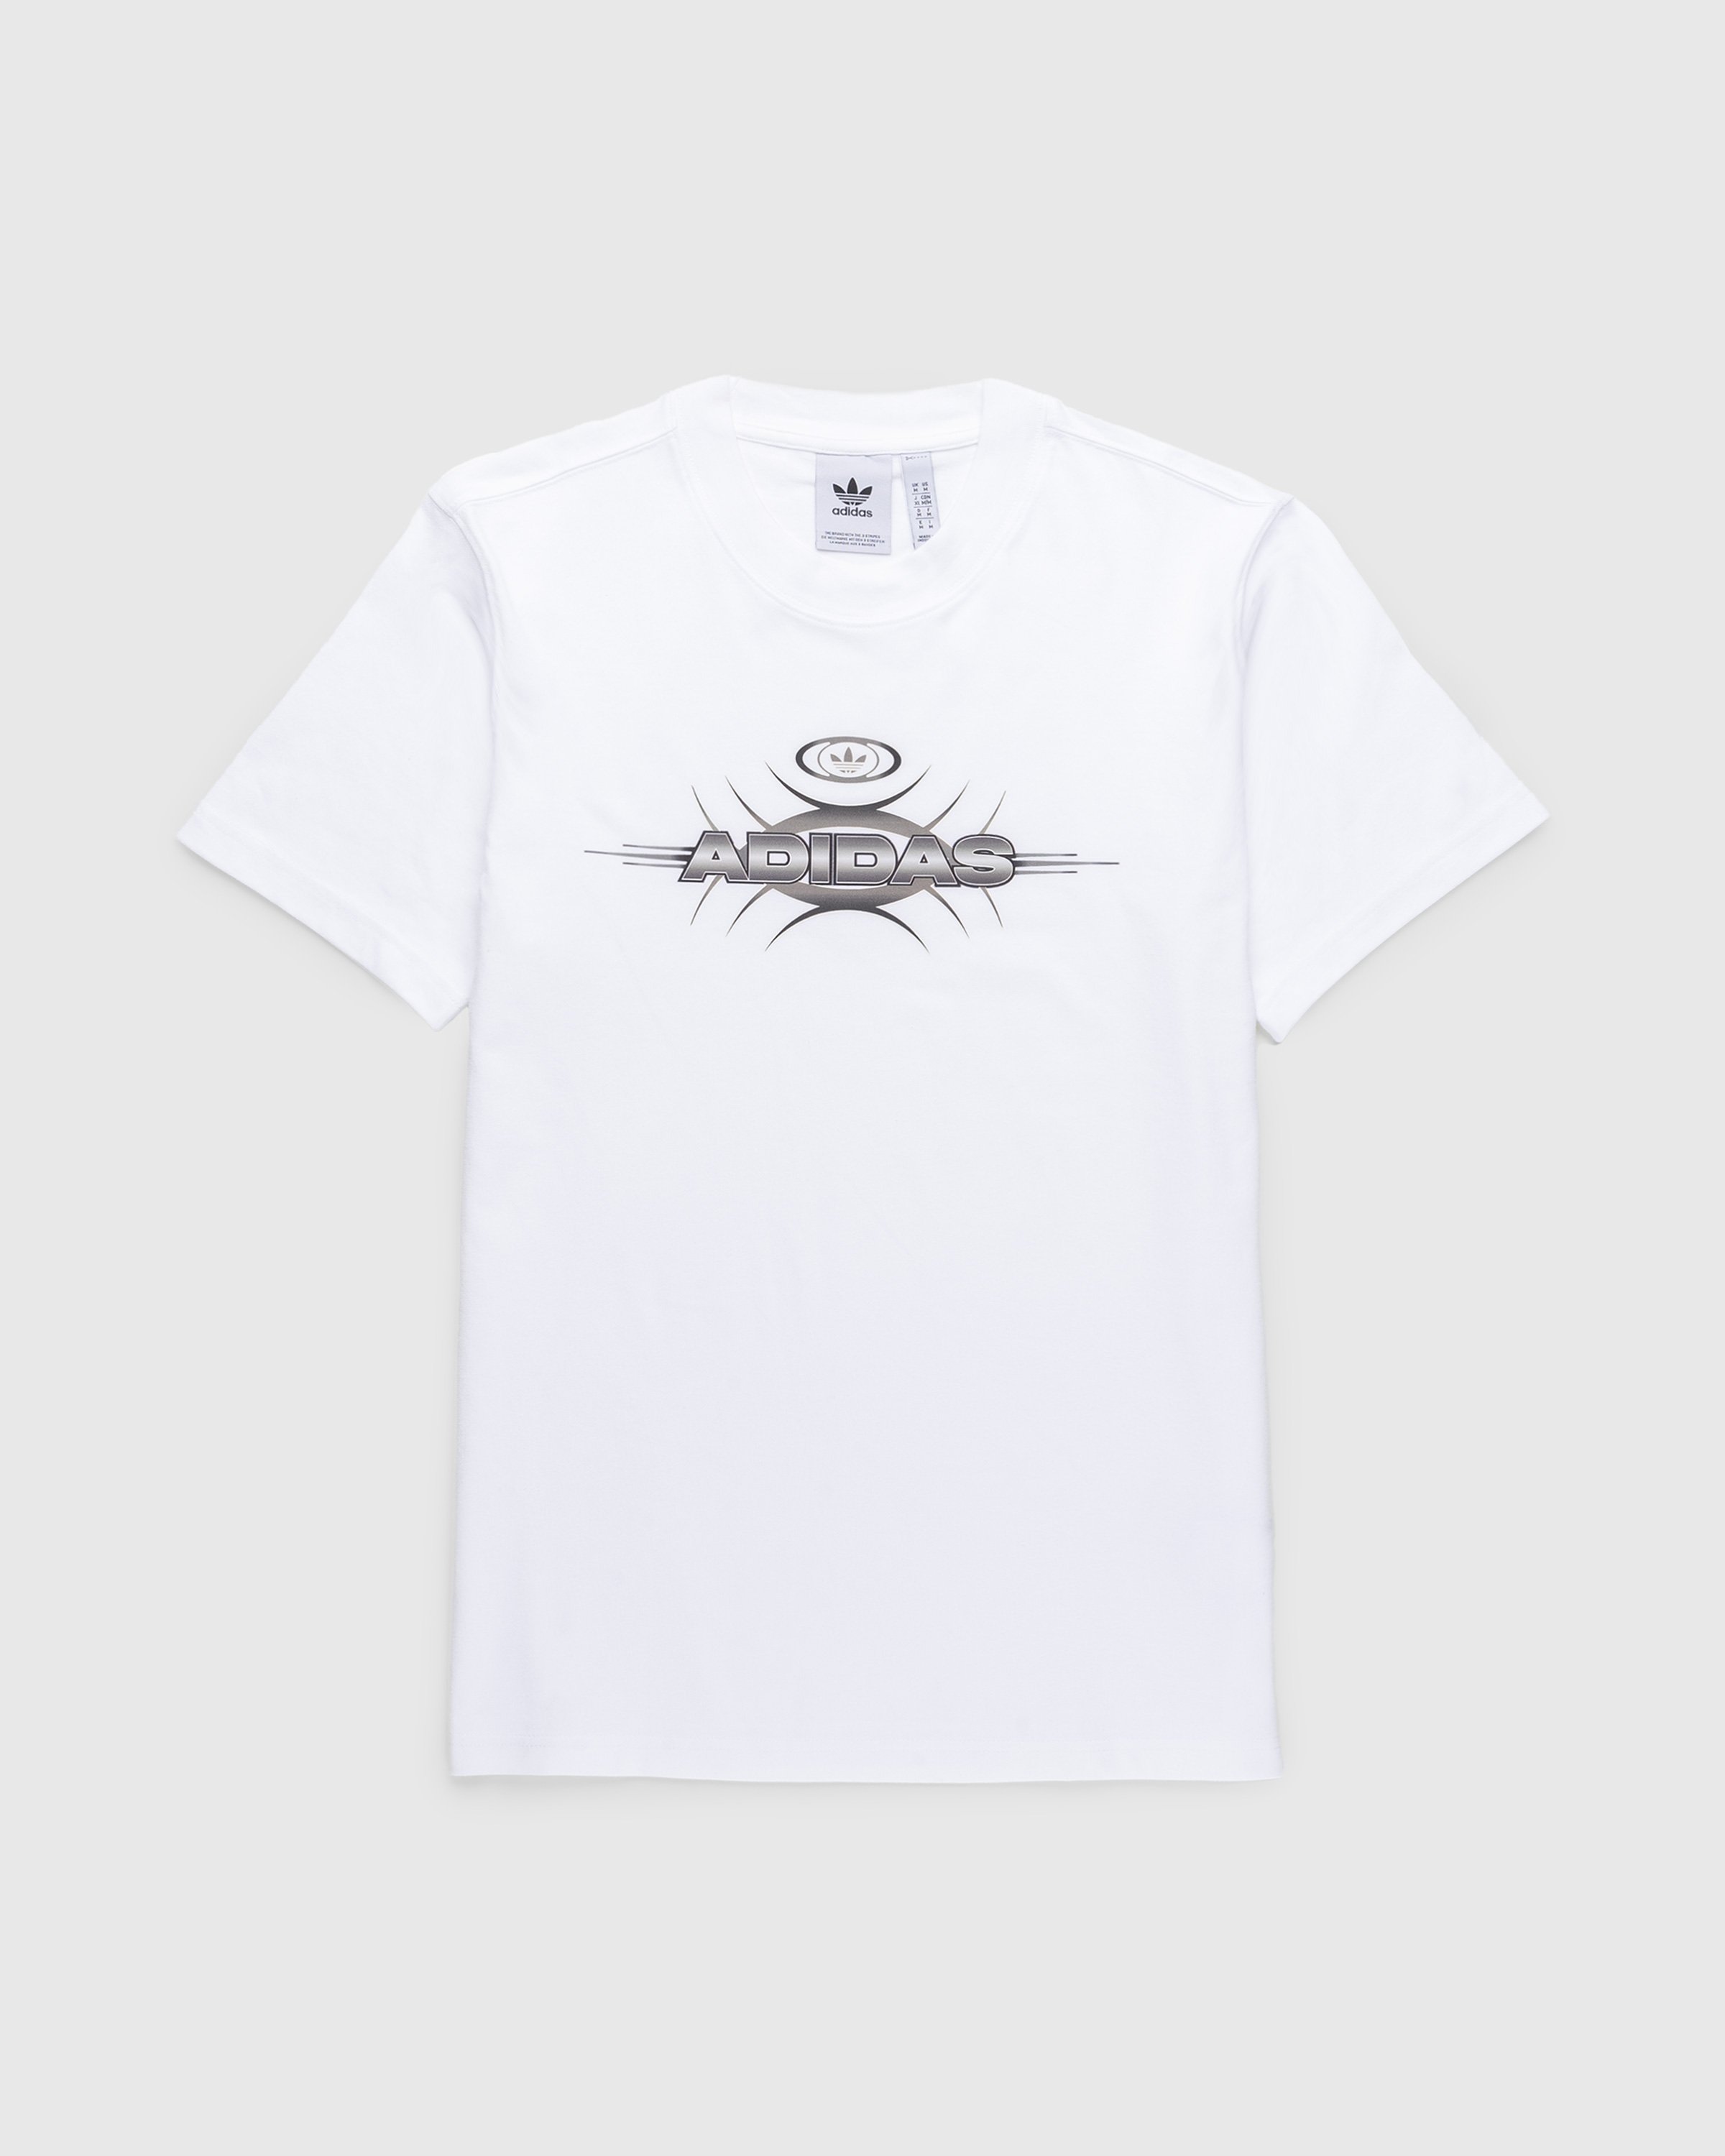 Adidas - Graphic Logo T-Shirt White - Clothing - White - Image 1